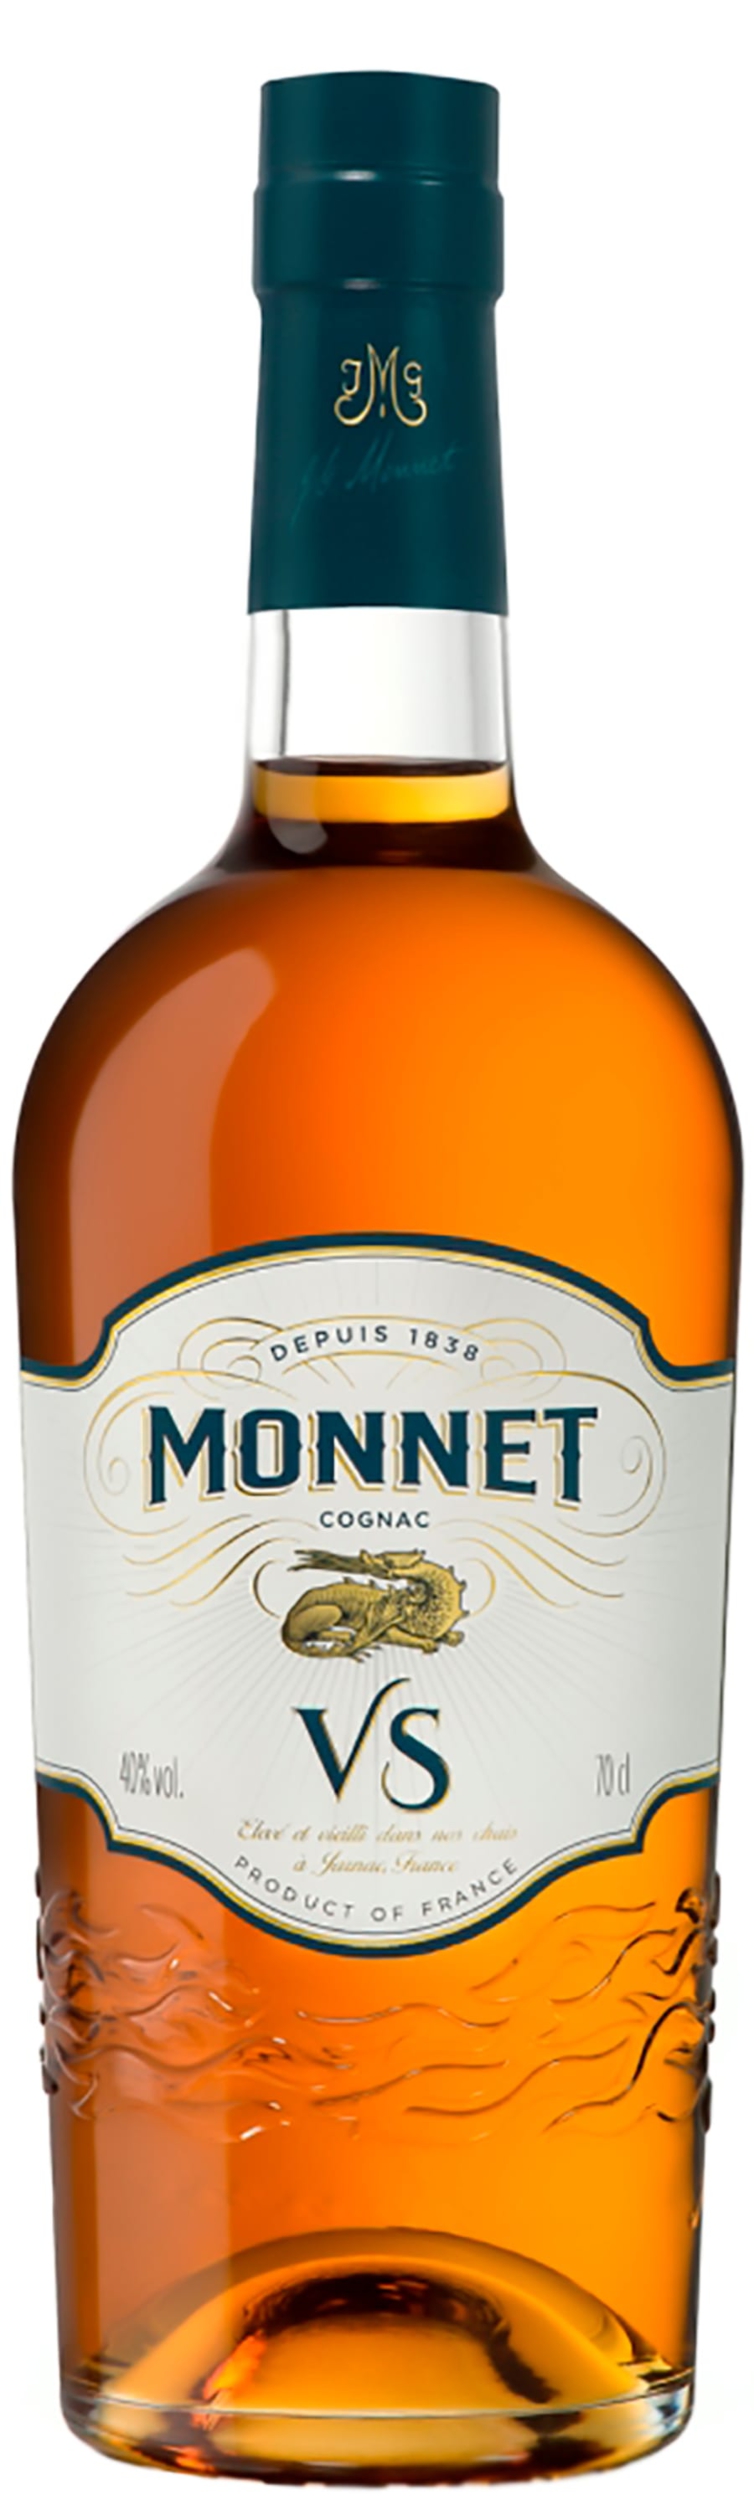 monnet-vs